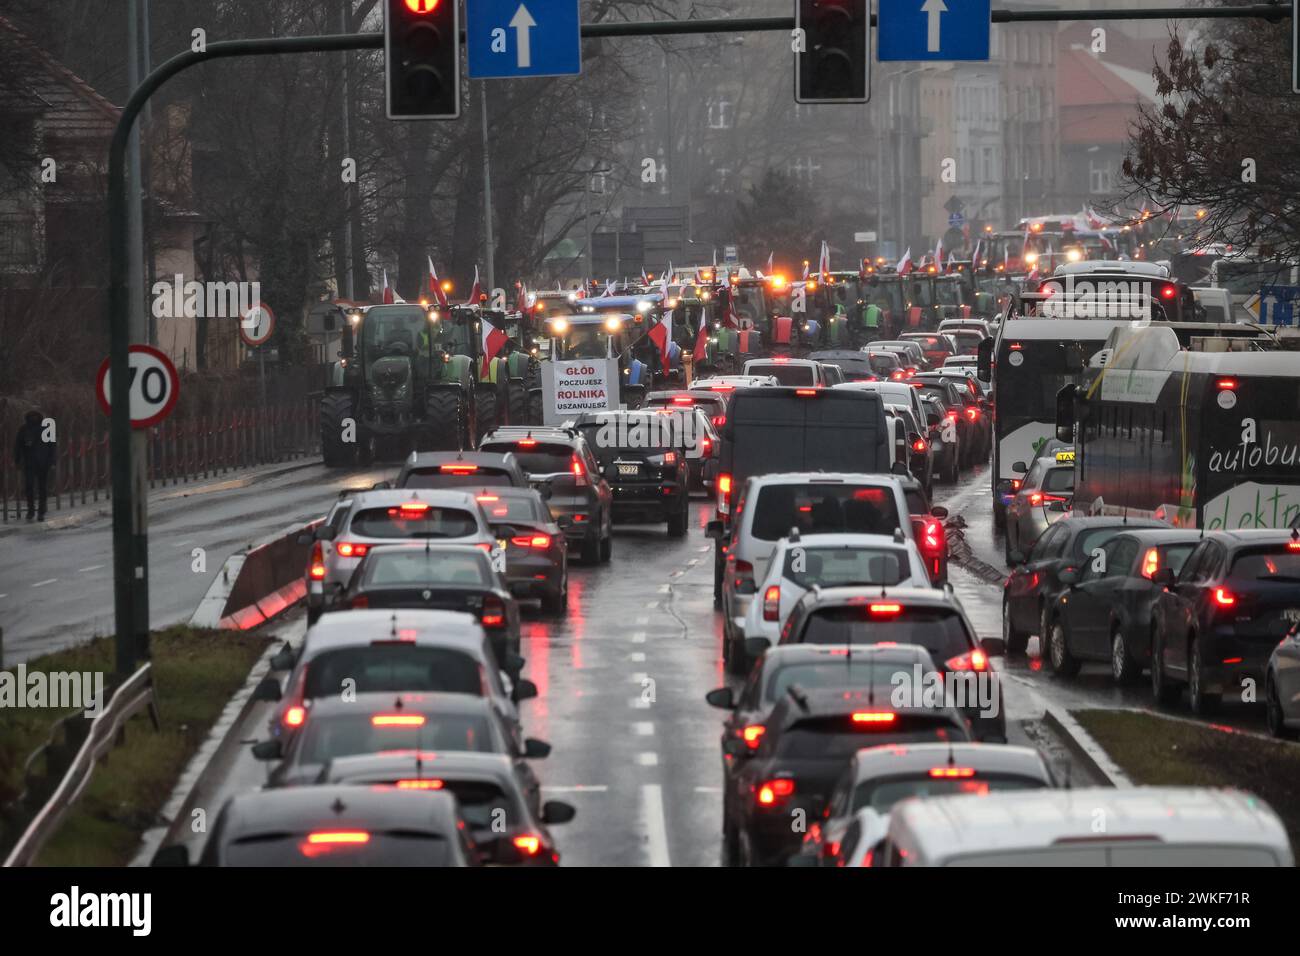 Landwirte fahren ihre Traktoren im Zentrum von Krakau, Polen, während sie am 20. Februar 2024 einen landesweiten Streik gegen die EU-Politik des Grünen Deals und die Agrarimporte aus der Ukraine veranstalten. Über 30 Traktoren blockierten heute die polnischen Straßen. Stockfoto